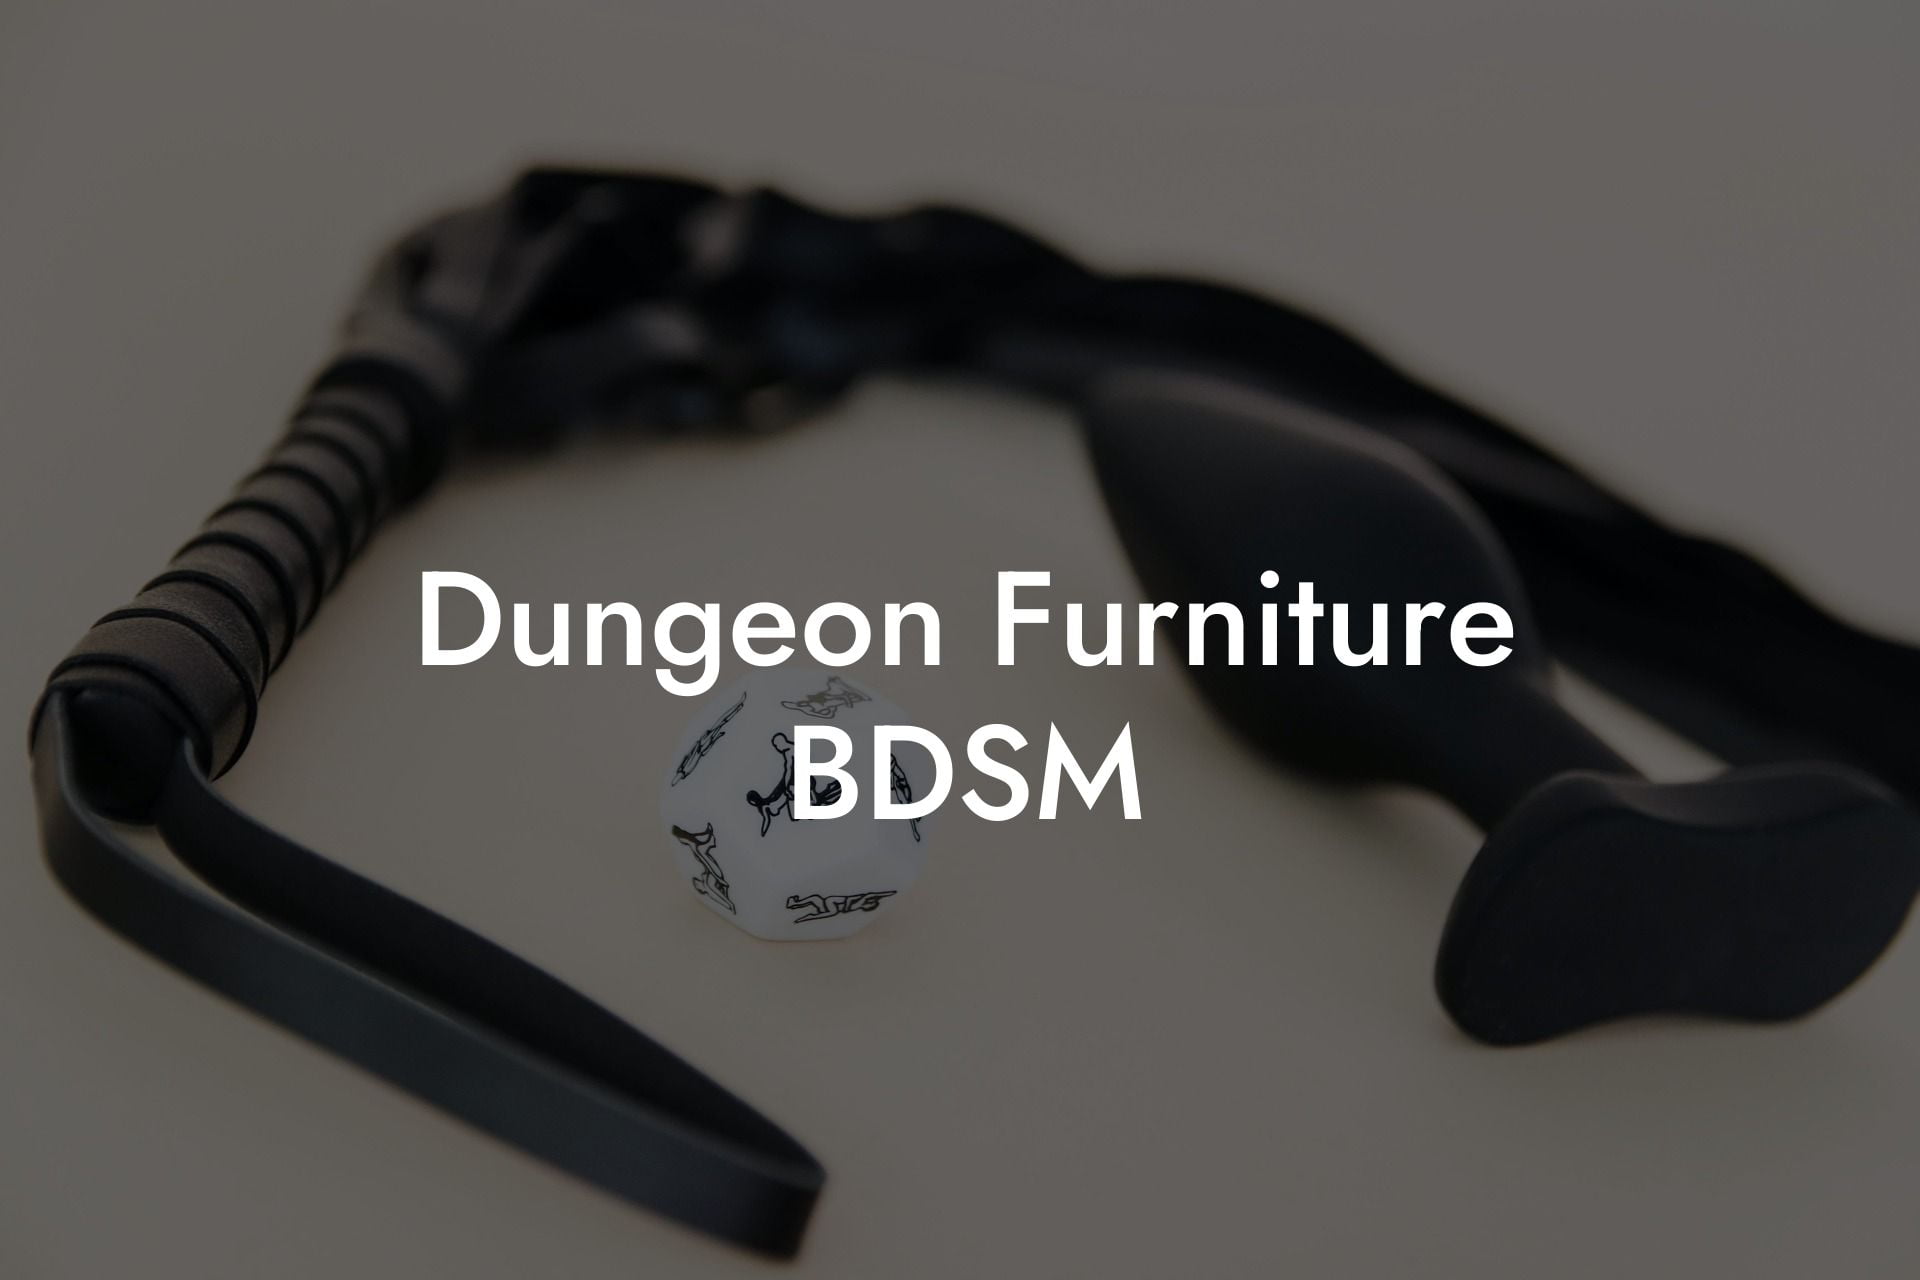 Dungeon Furniture BDSM